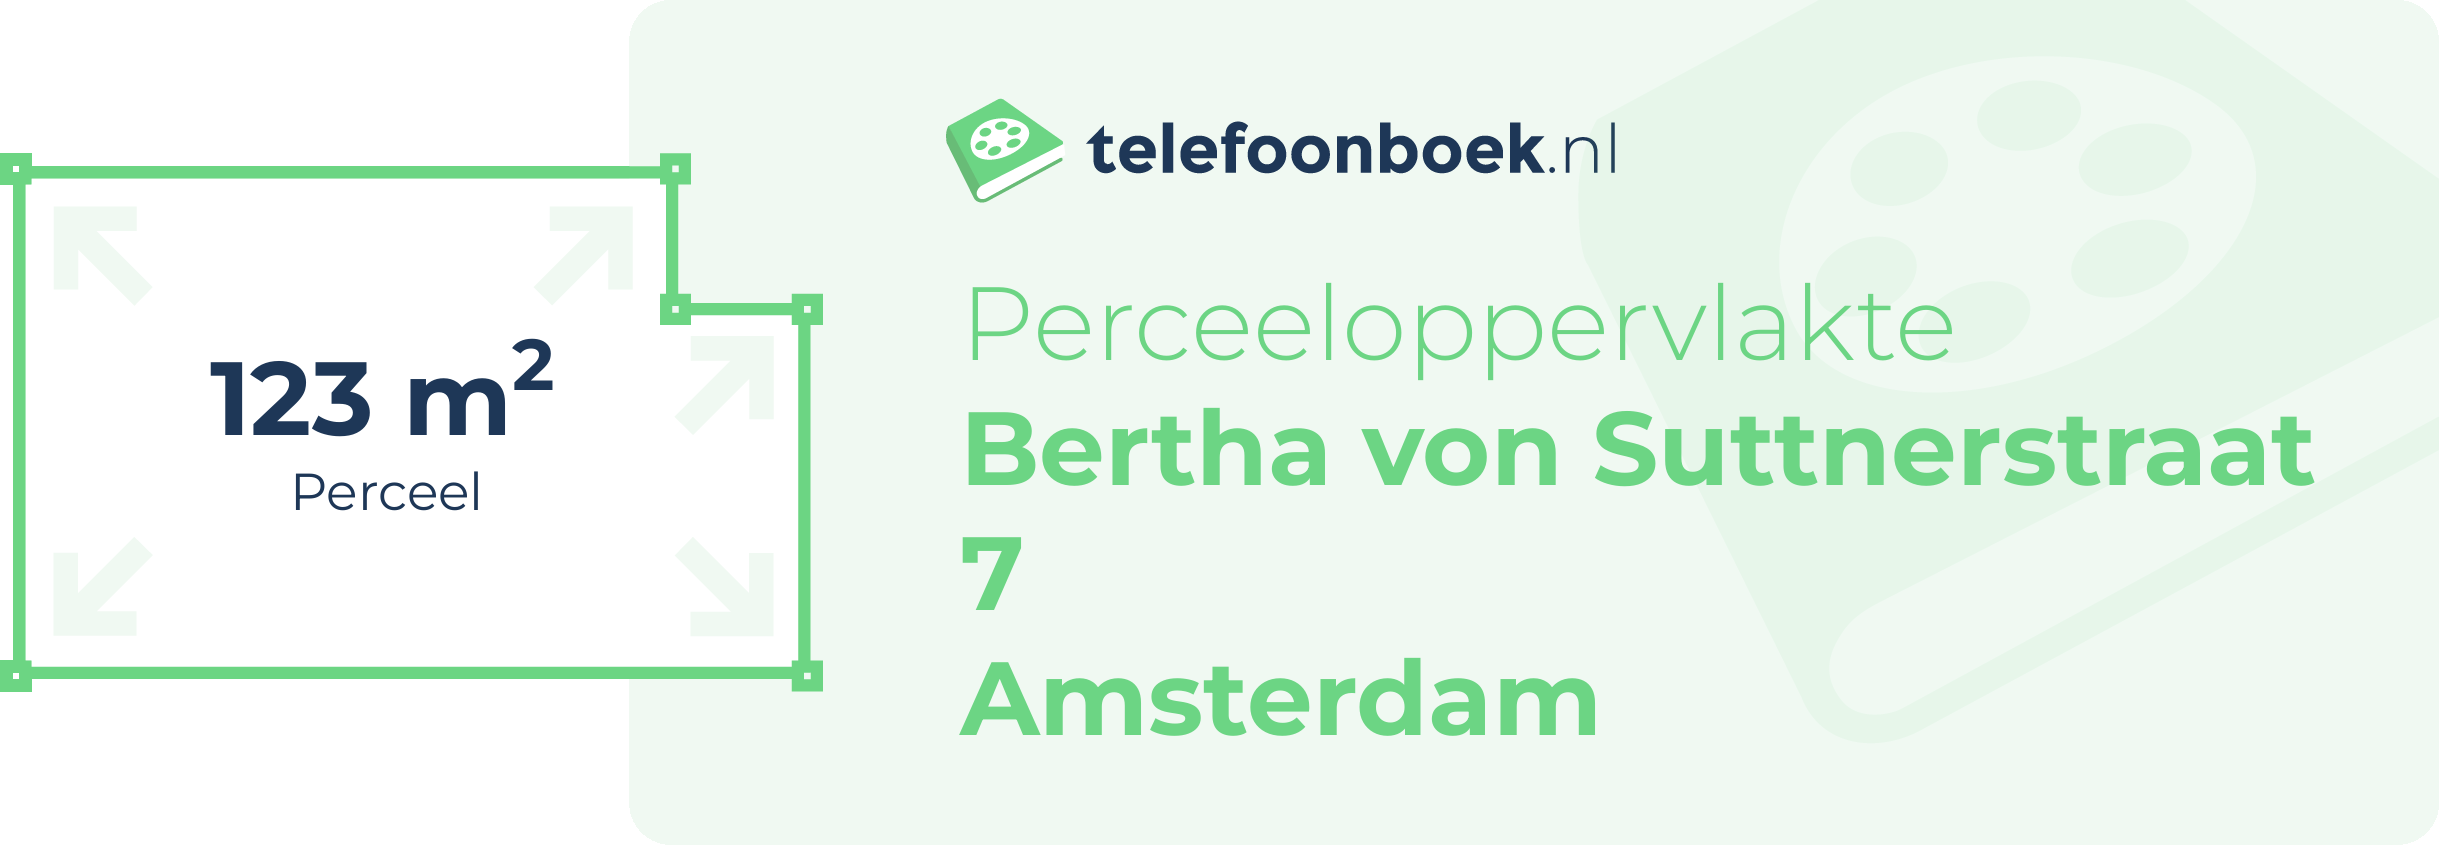 Perceeloppervlakte Bertha Von Suttnerstraat 7 Amsterdam